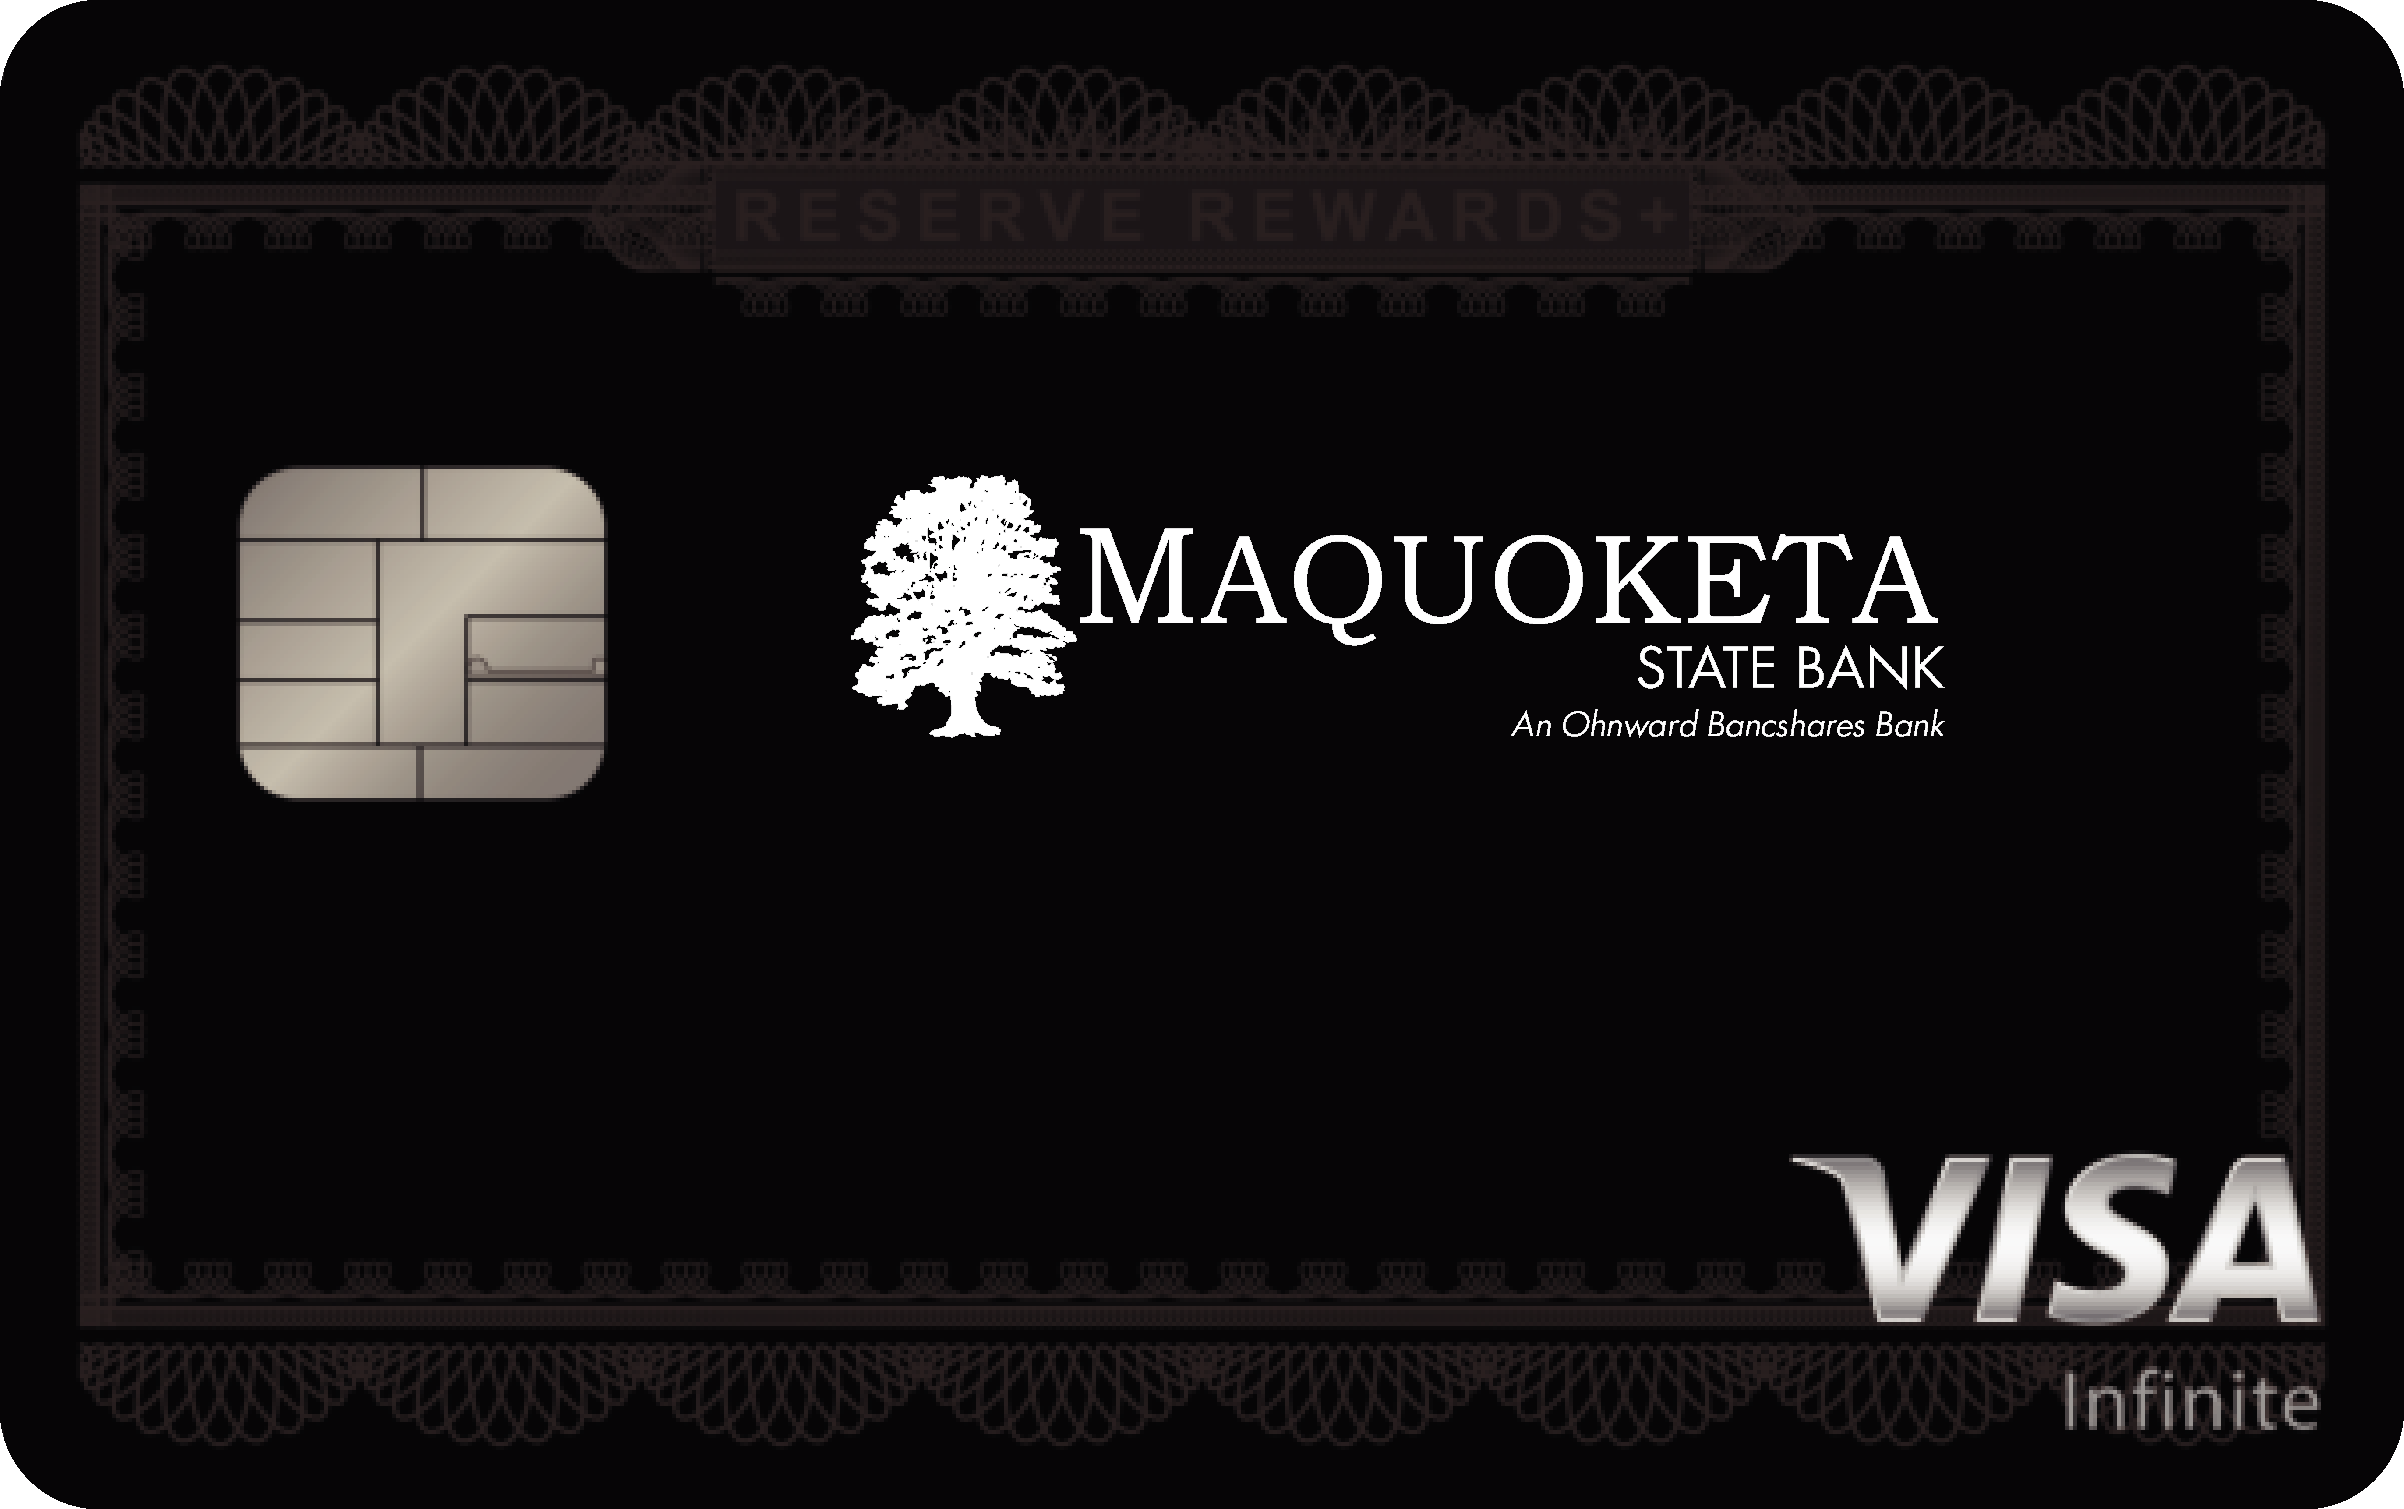 Maquoketa State Bank